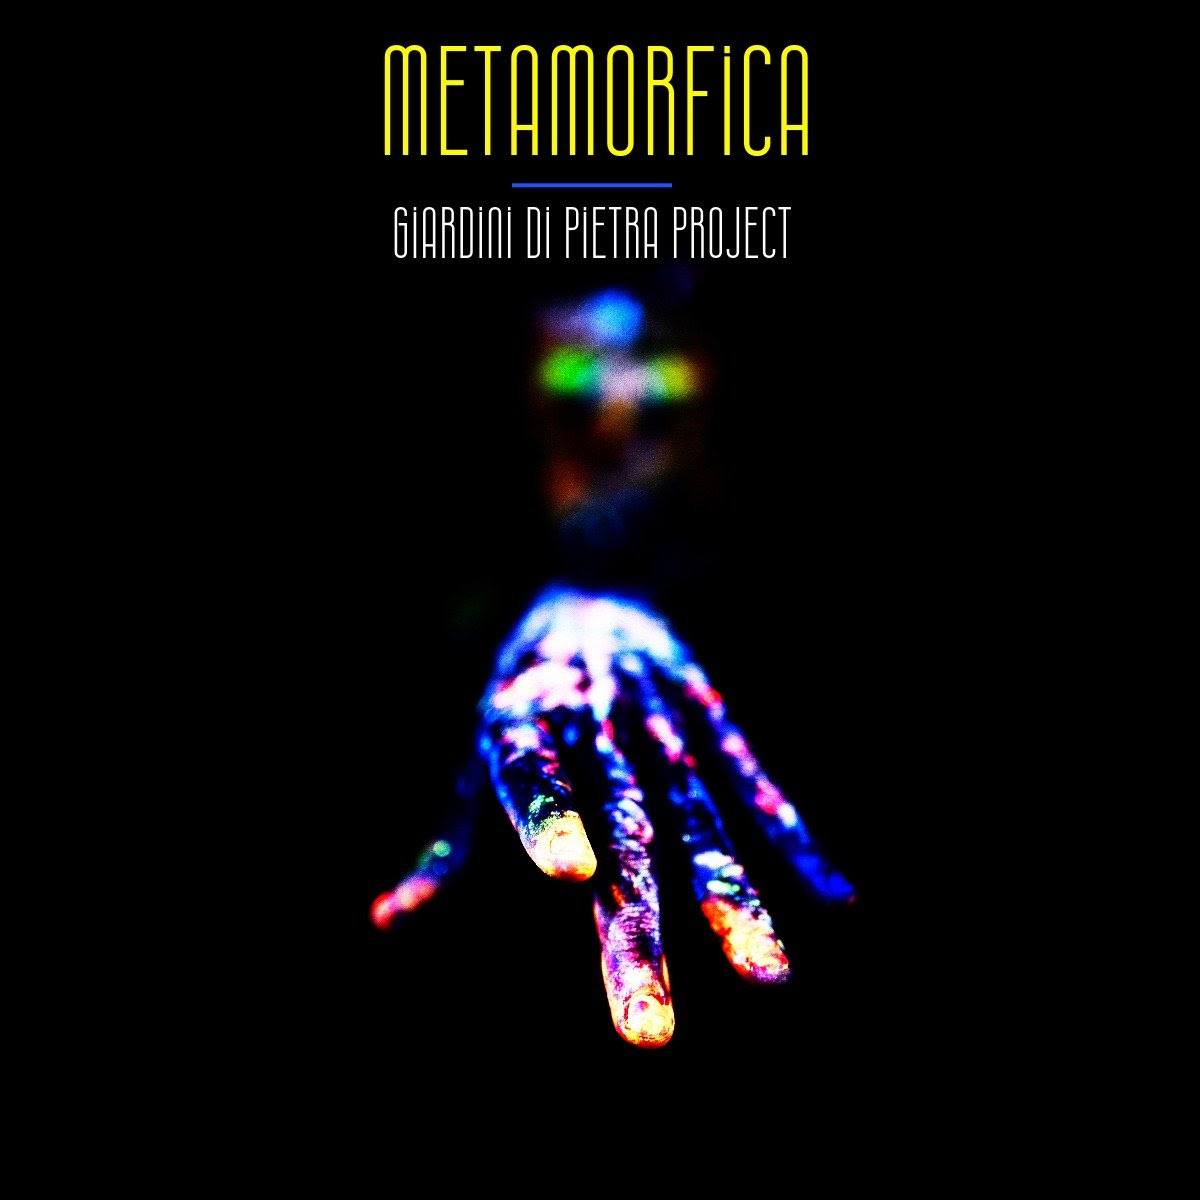 GIARDINI DI PIETRA PROJECT: sabato 21 ottobre esce il nuovo singolo “METAMORFICA”